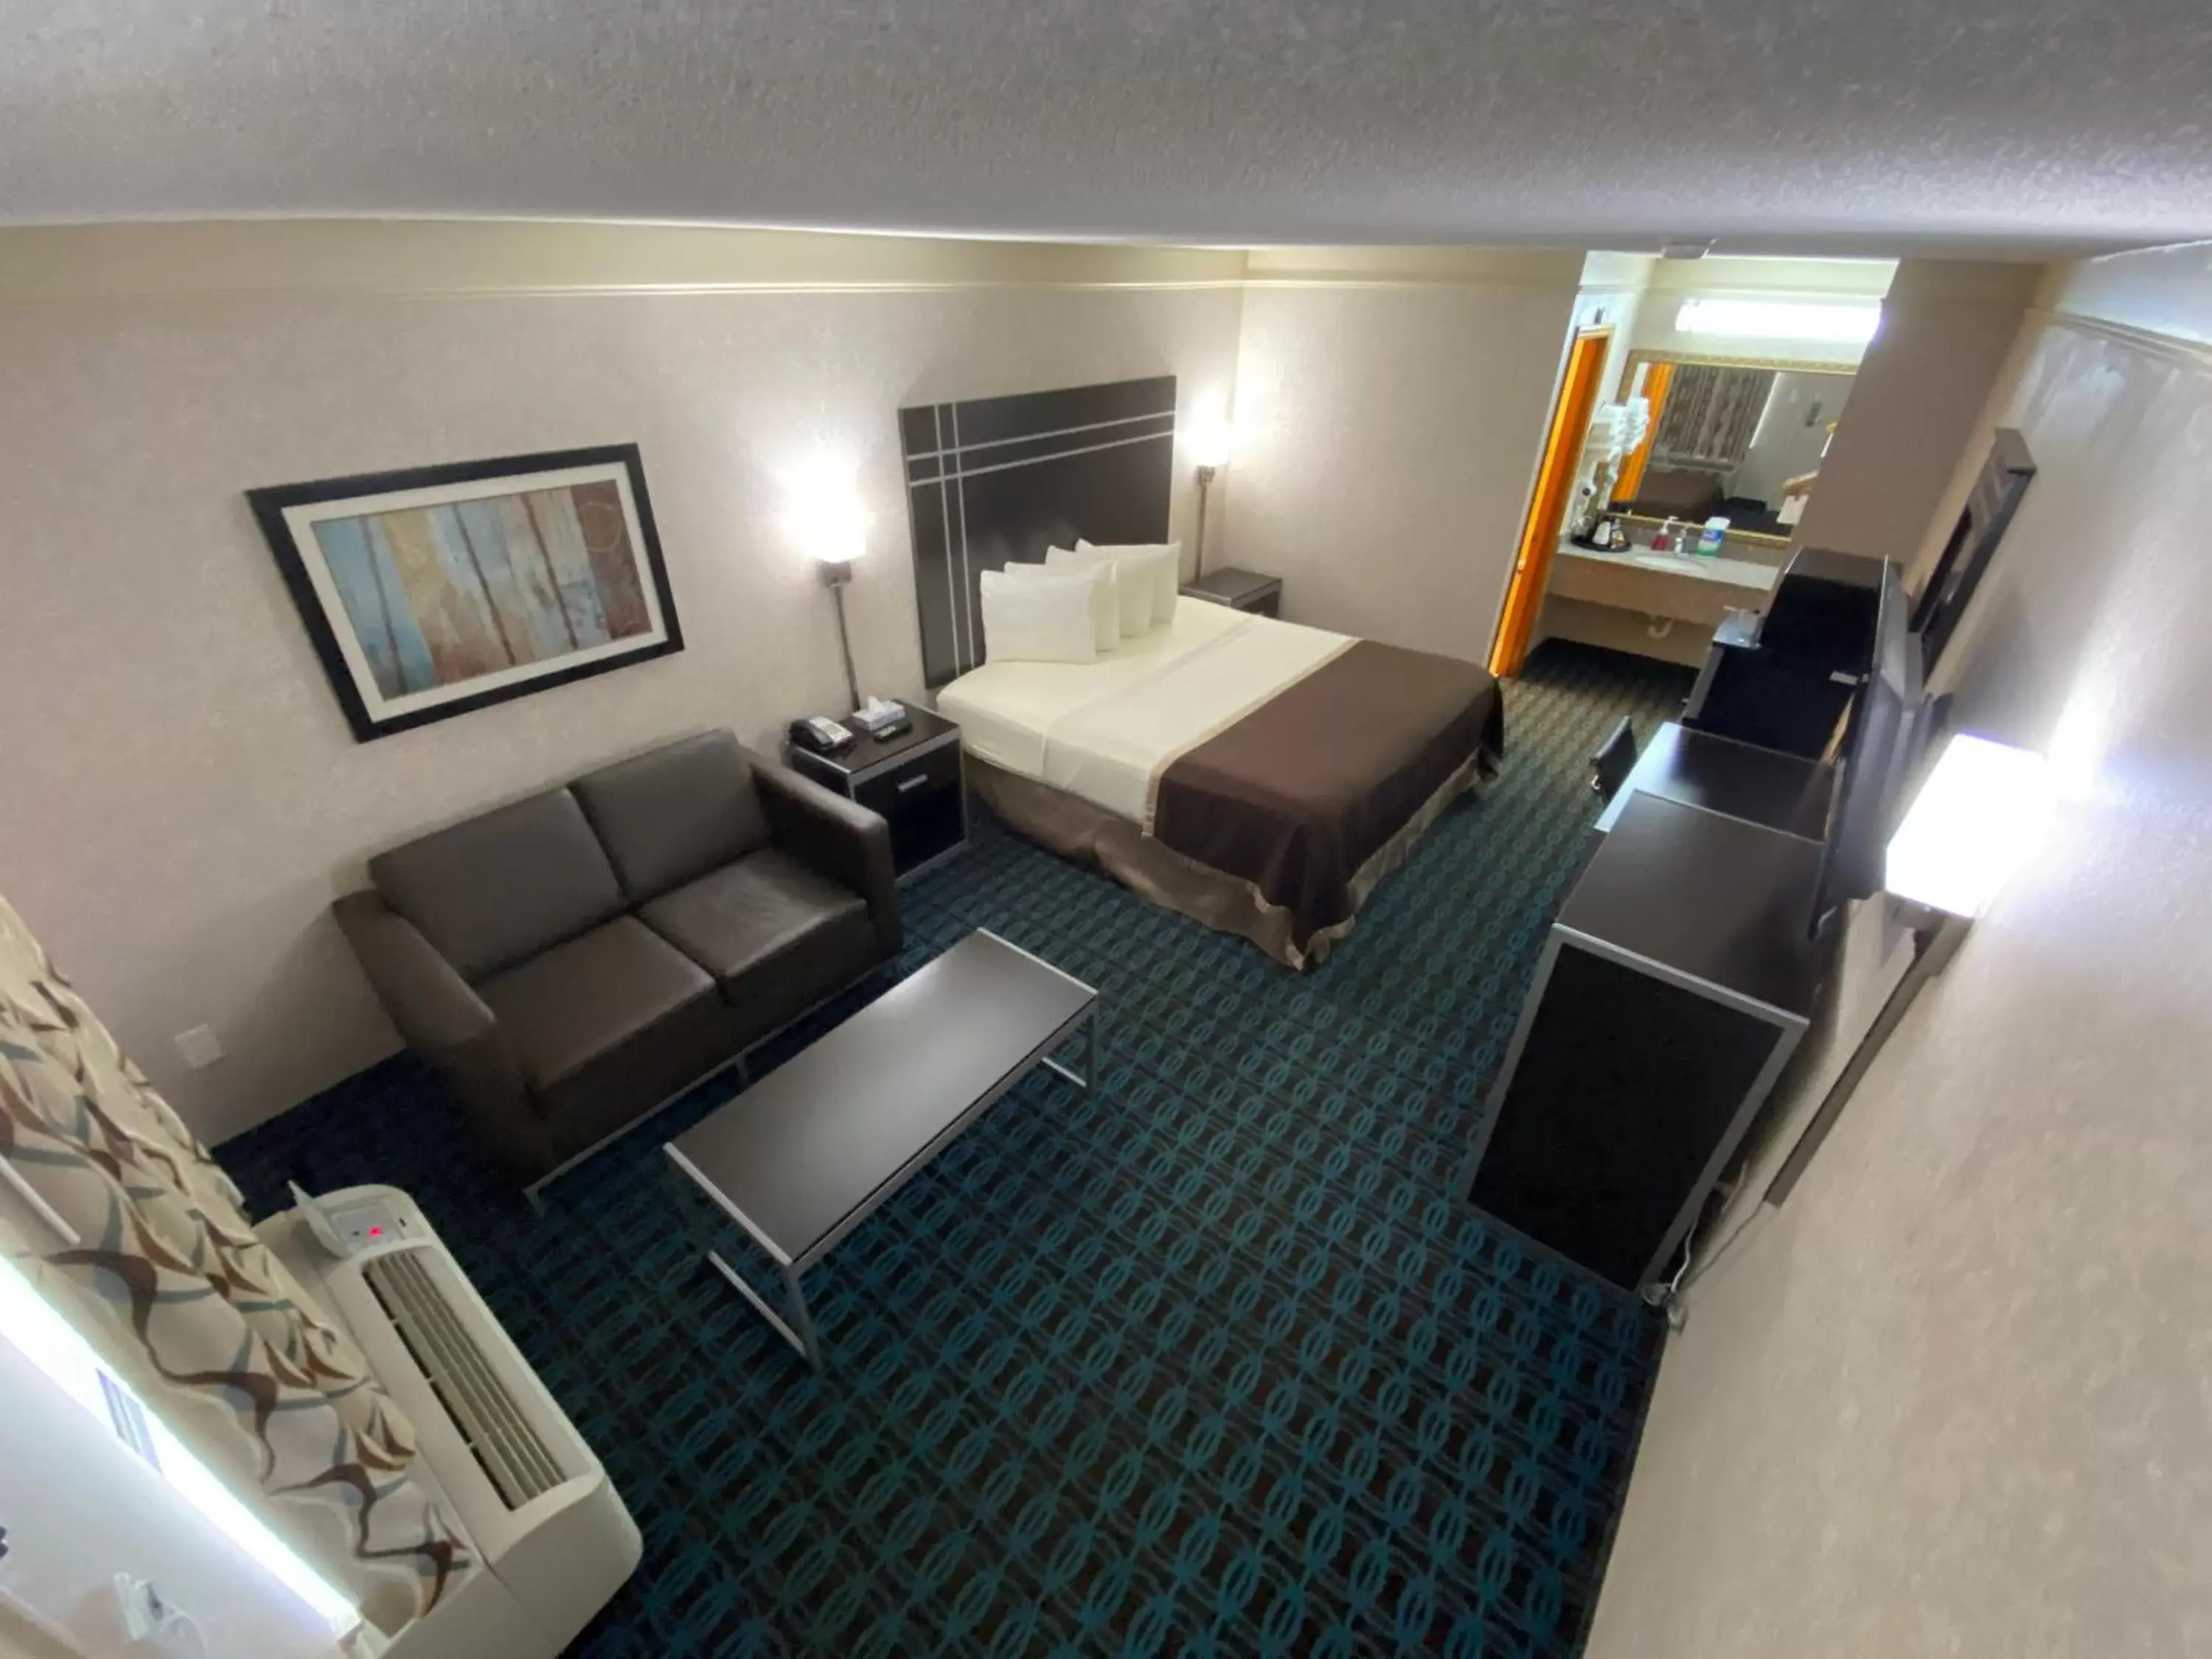 Room Photo in Deluxe Inn - Fayetteville I-95